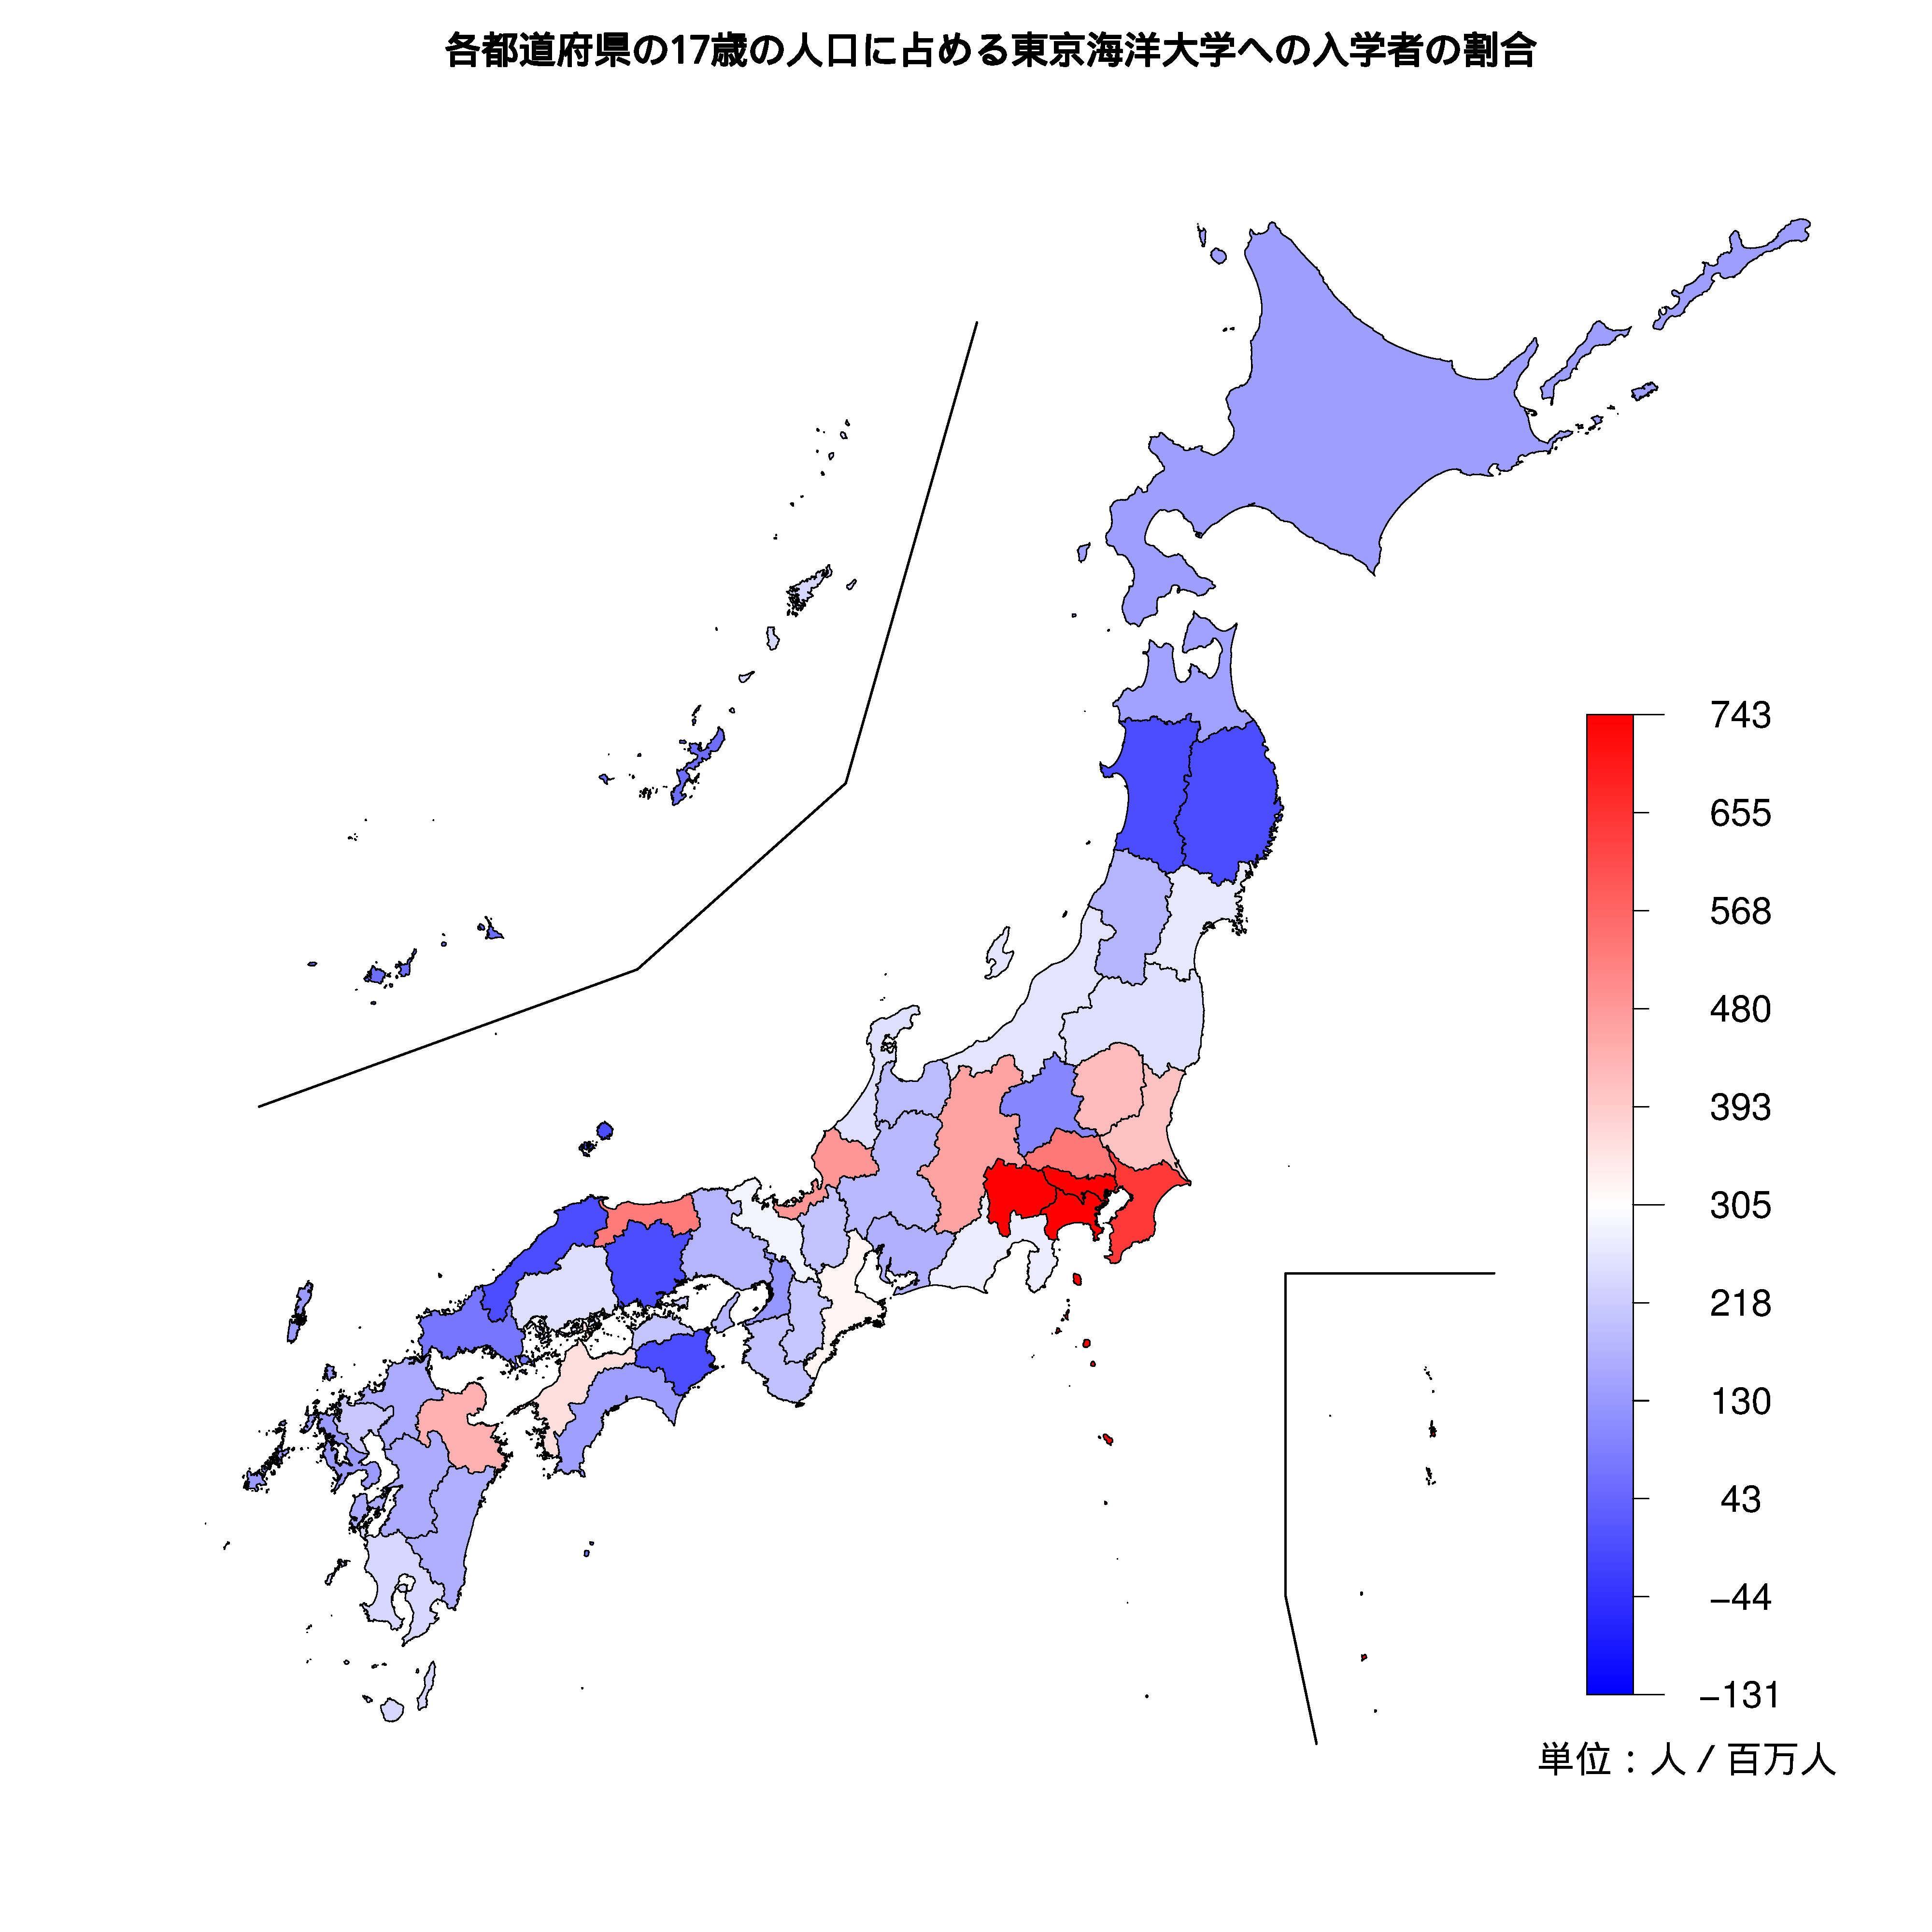 東京海洋大学への入学者が多い都道府県の色分け地図